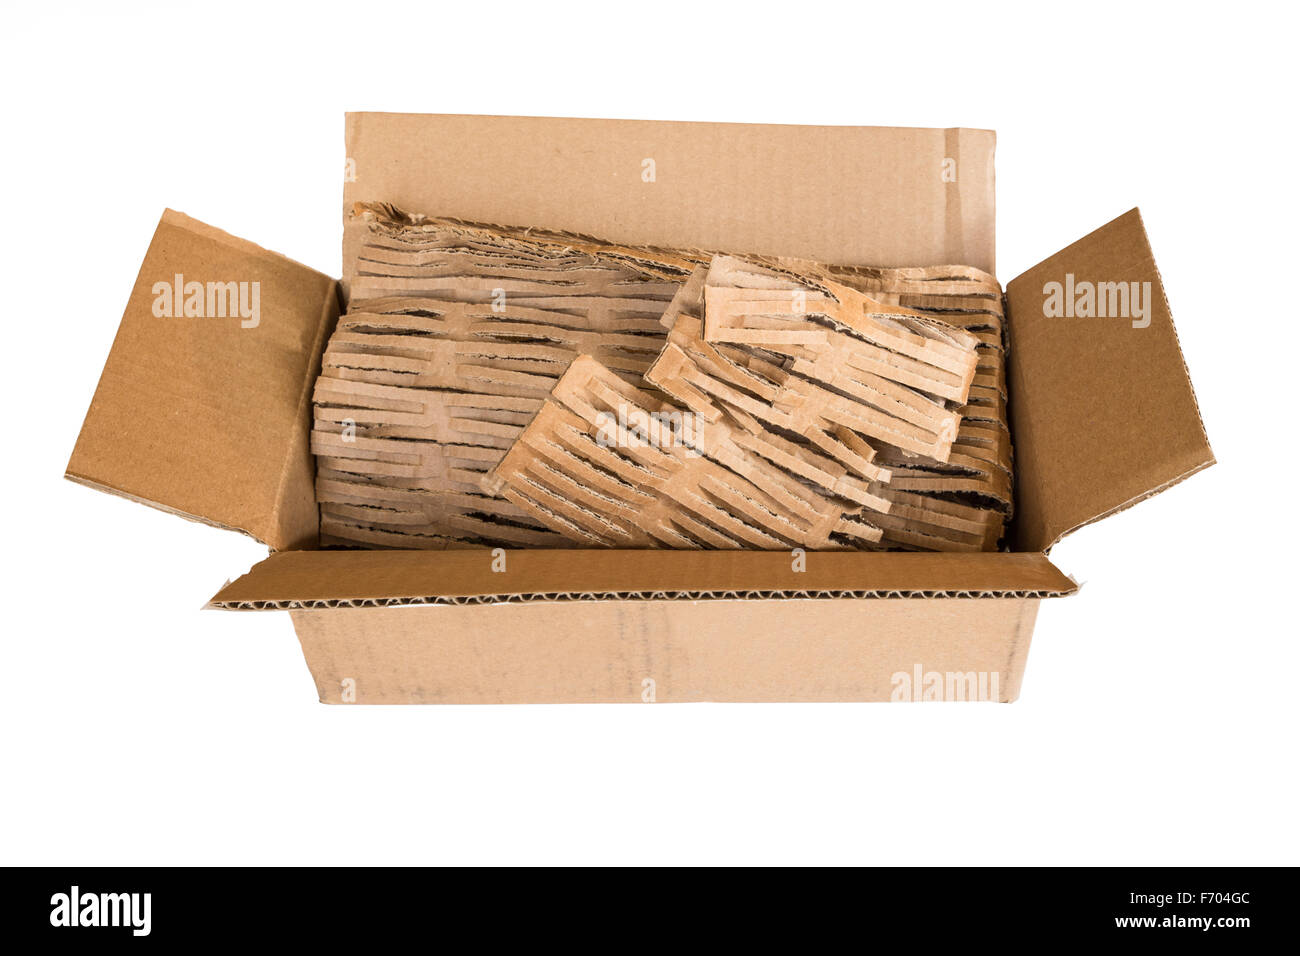 Abrir la caja de envío de cartón vacío con material de embalaje ecológico aislado sobre fondo blanco. Foto de stock